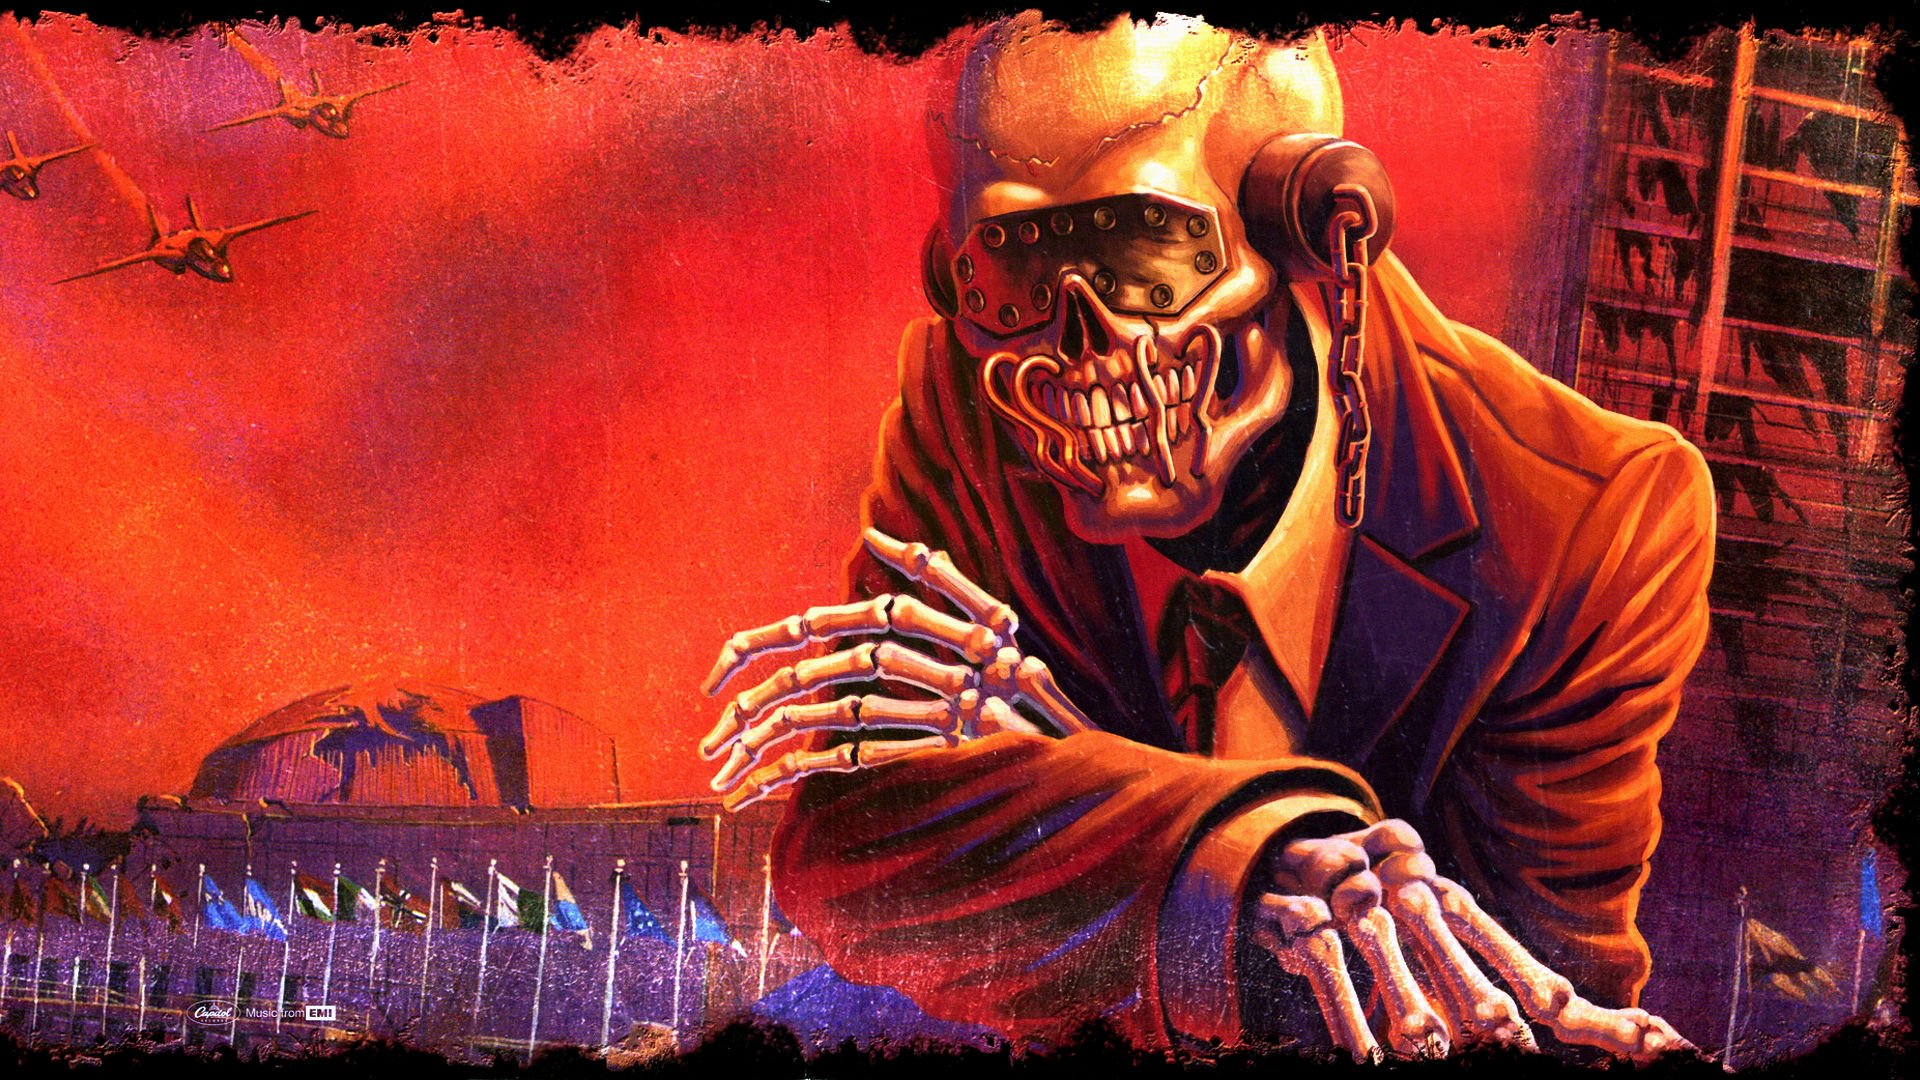 Megadeth Wallpaper 1080p 78tg422 4usky